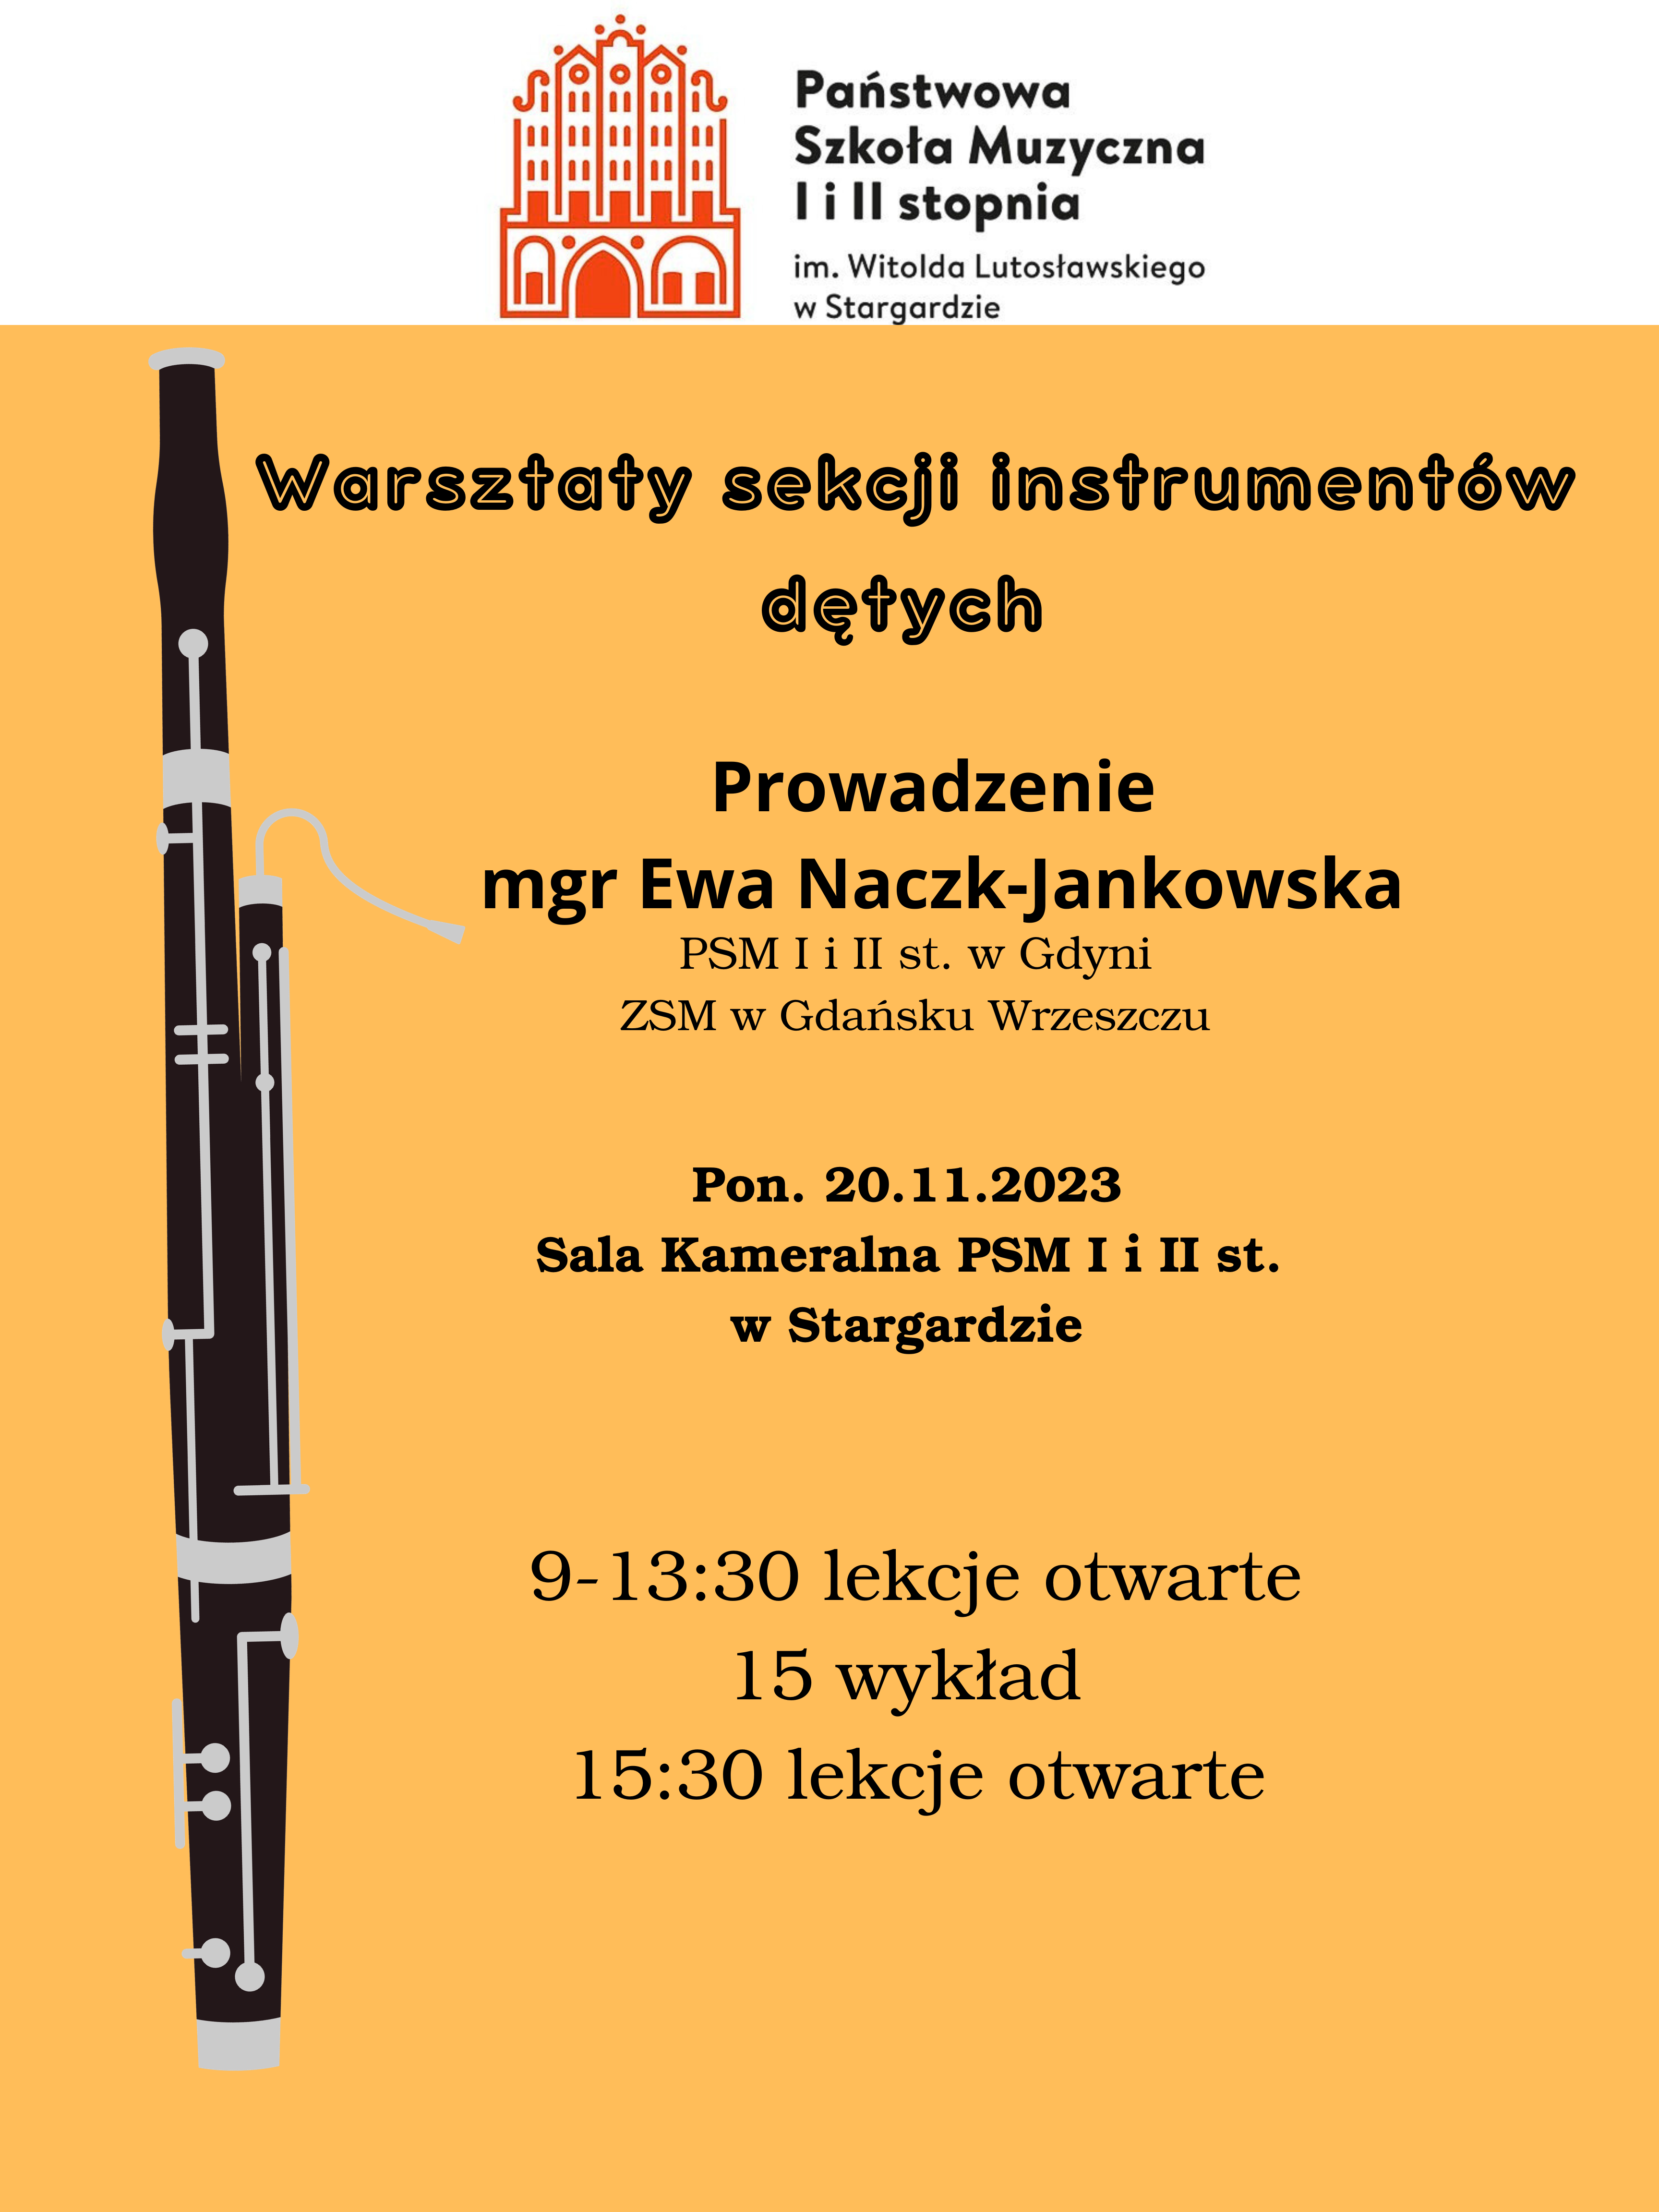 Plakat informacyjny o Warsztatach instrumentów dętych w dniu 20 listopada 2023. Z lewej strony plakatu na pomarańczowym tle znajduje się grafika fagotu.